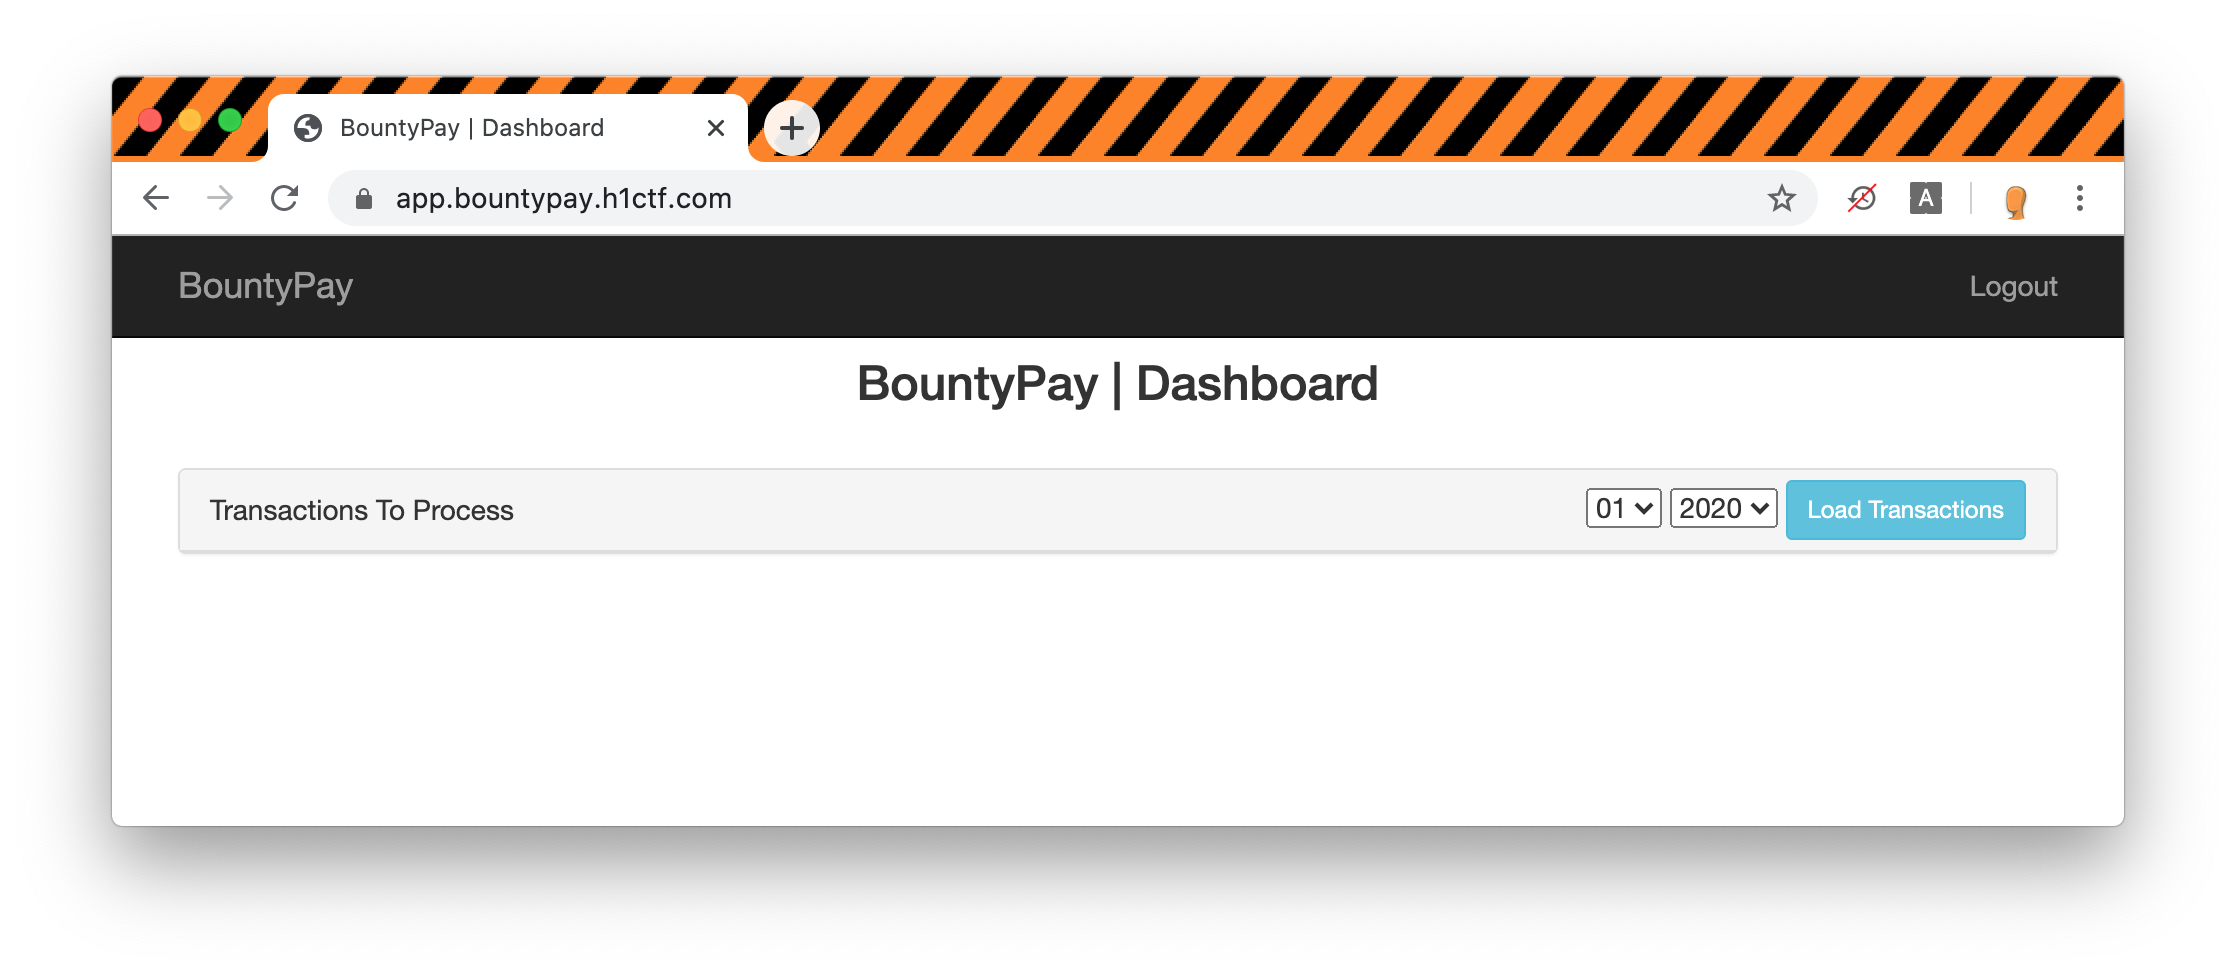 BountyPay | Dashboard